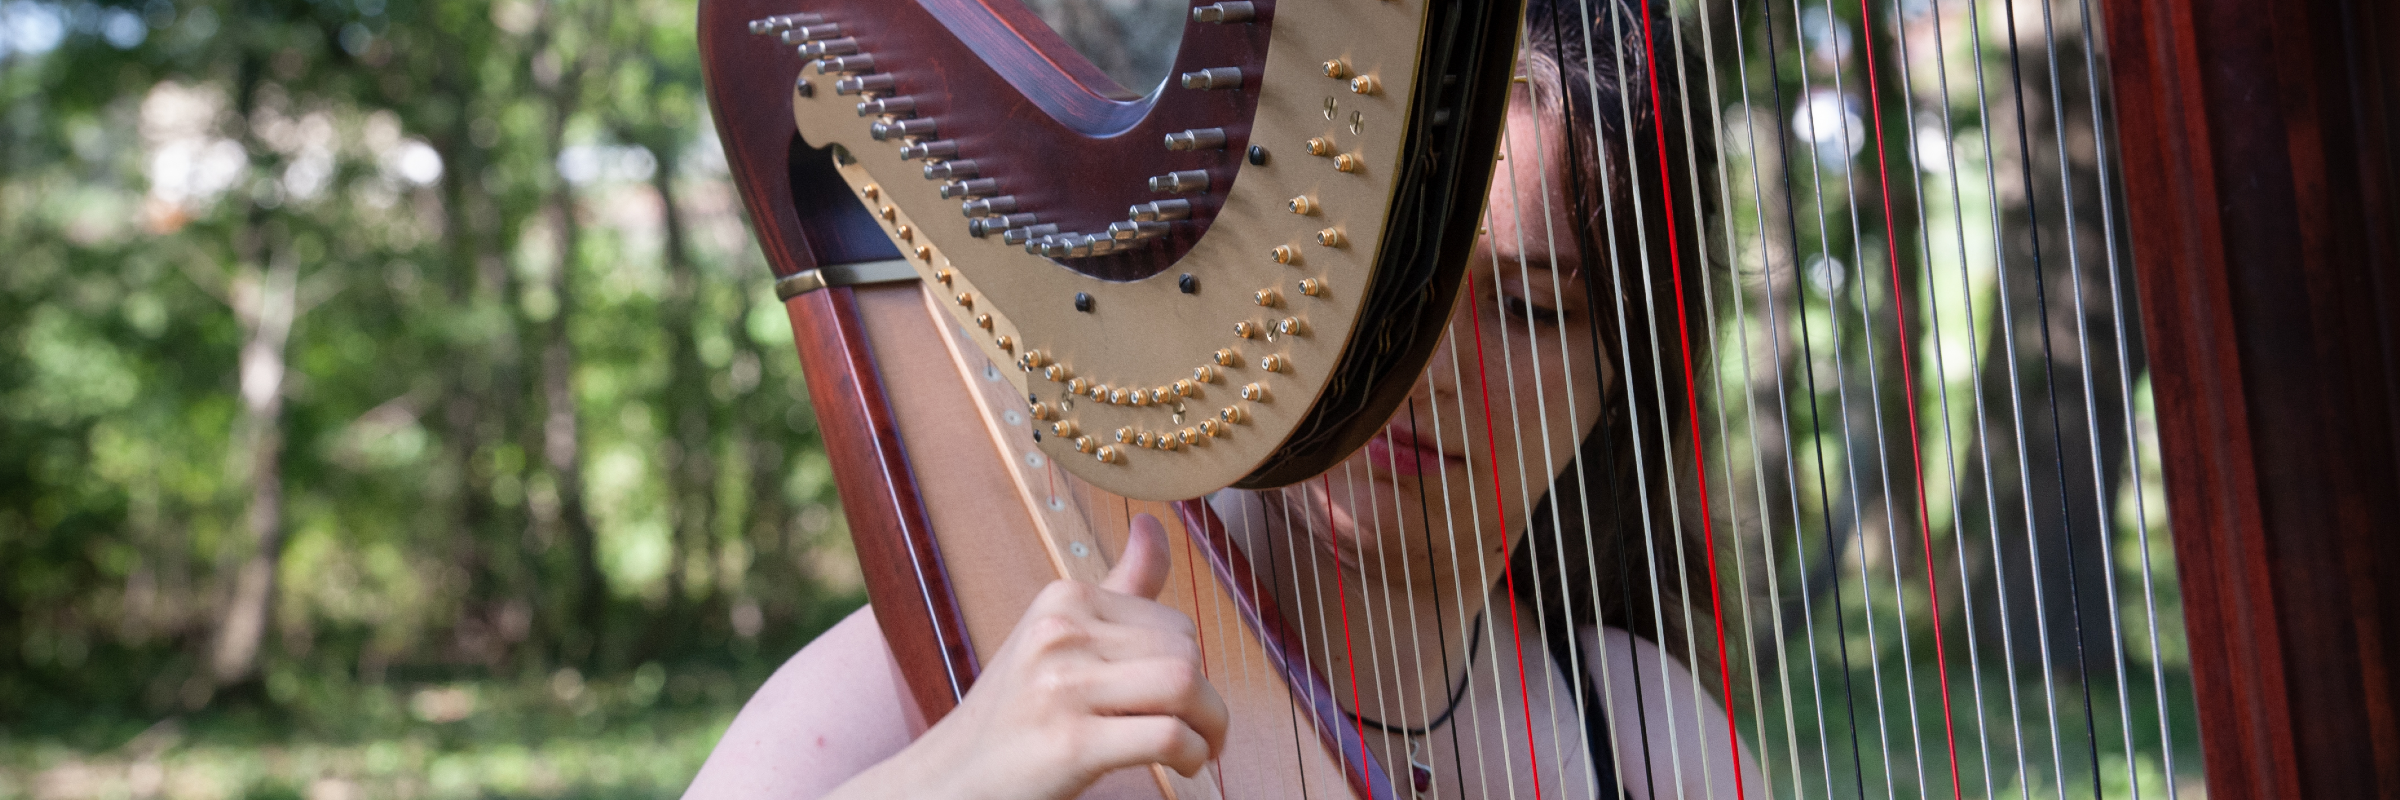 Flora Francescut, musicien Musique Celtique en représentation à Loire - photo de couverture n° 1